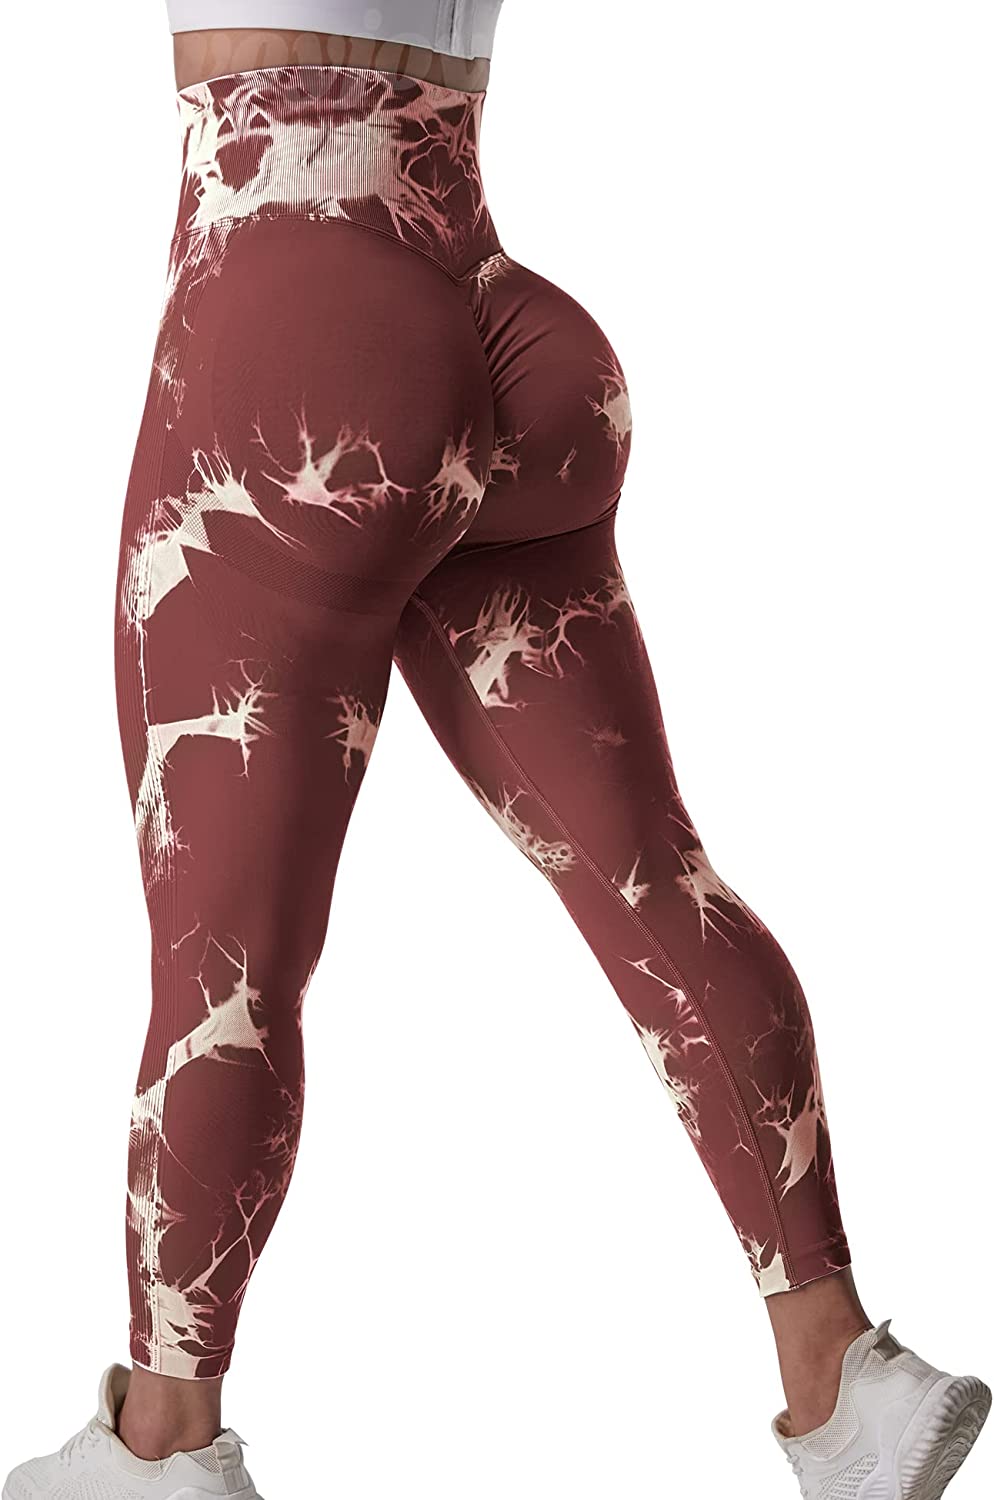 VOYJOY Tie Dye Biker Shorts for Women High Waist Seamless Shorts Workout  Yoga Leggings Scrunch Butt Lift Gym Pants - ShopStyle